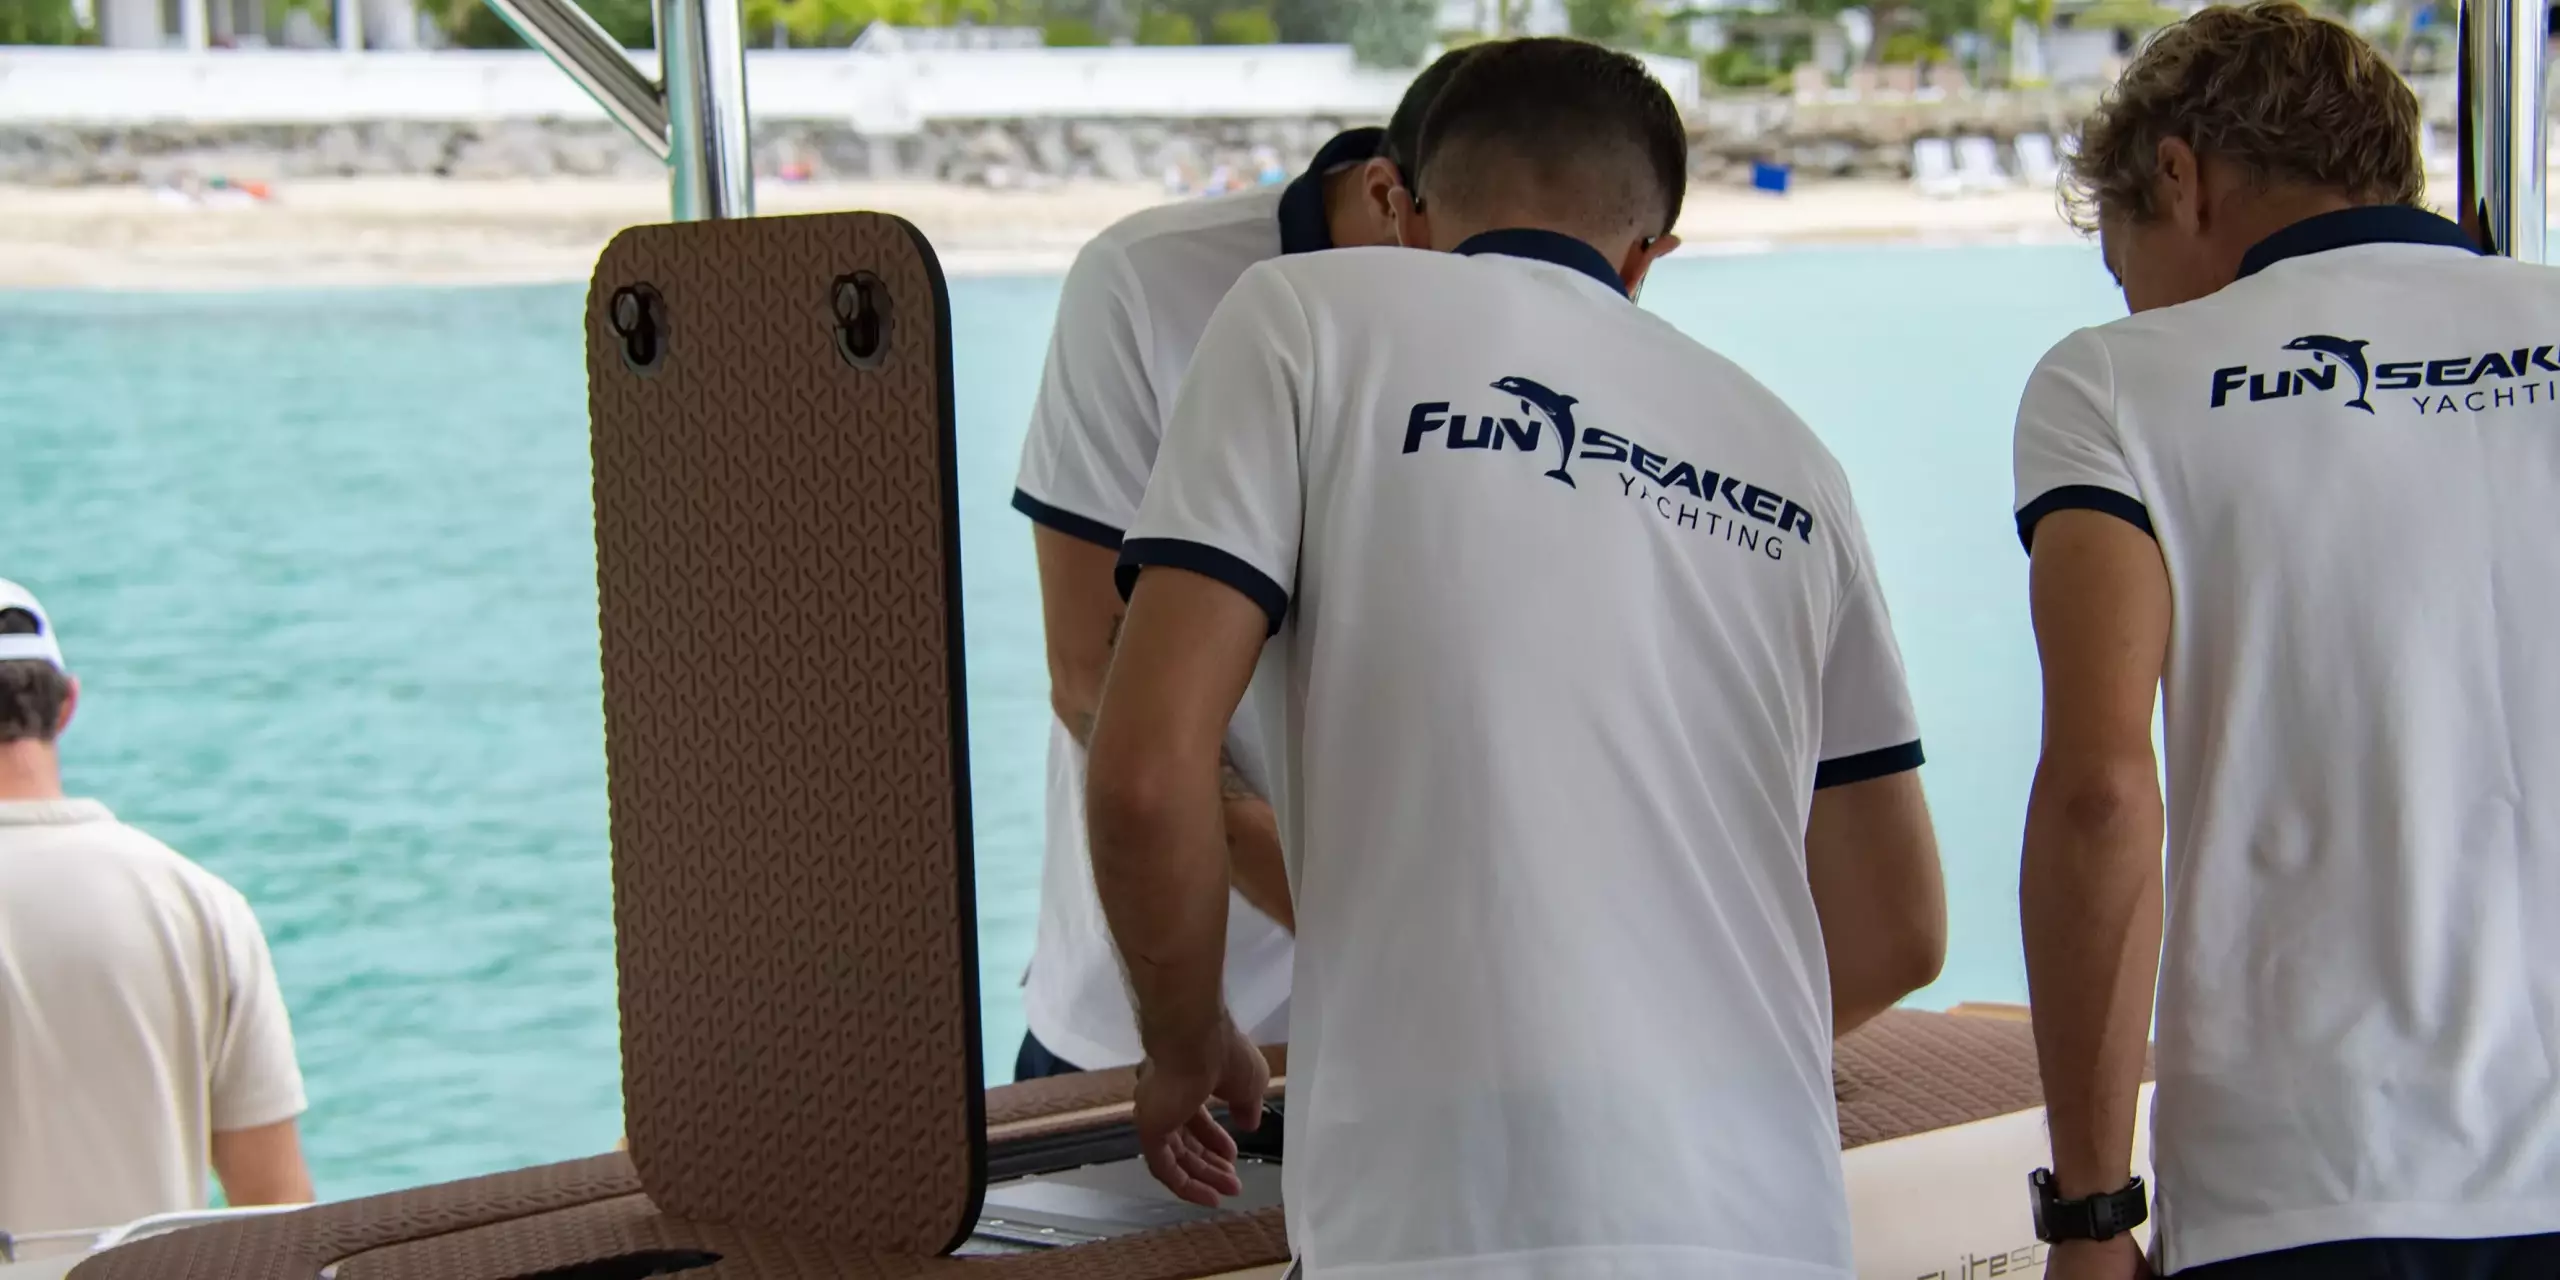 Funseaker team preparing the Flite E-foil